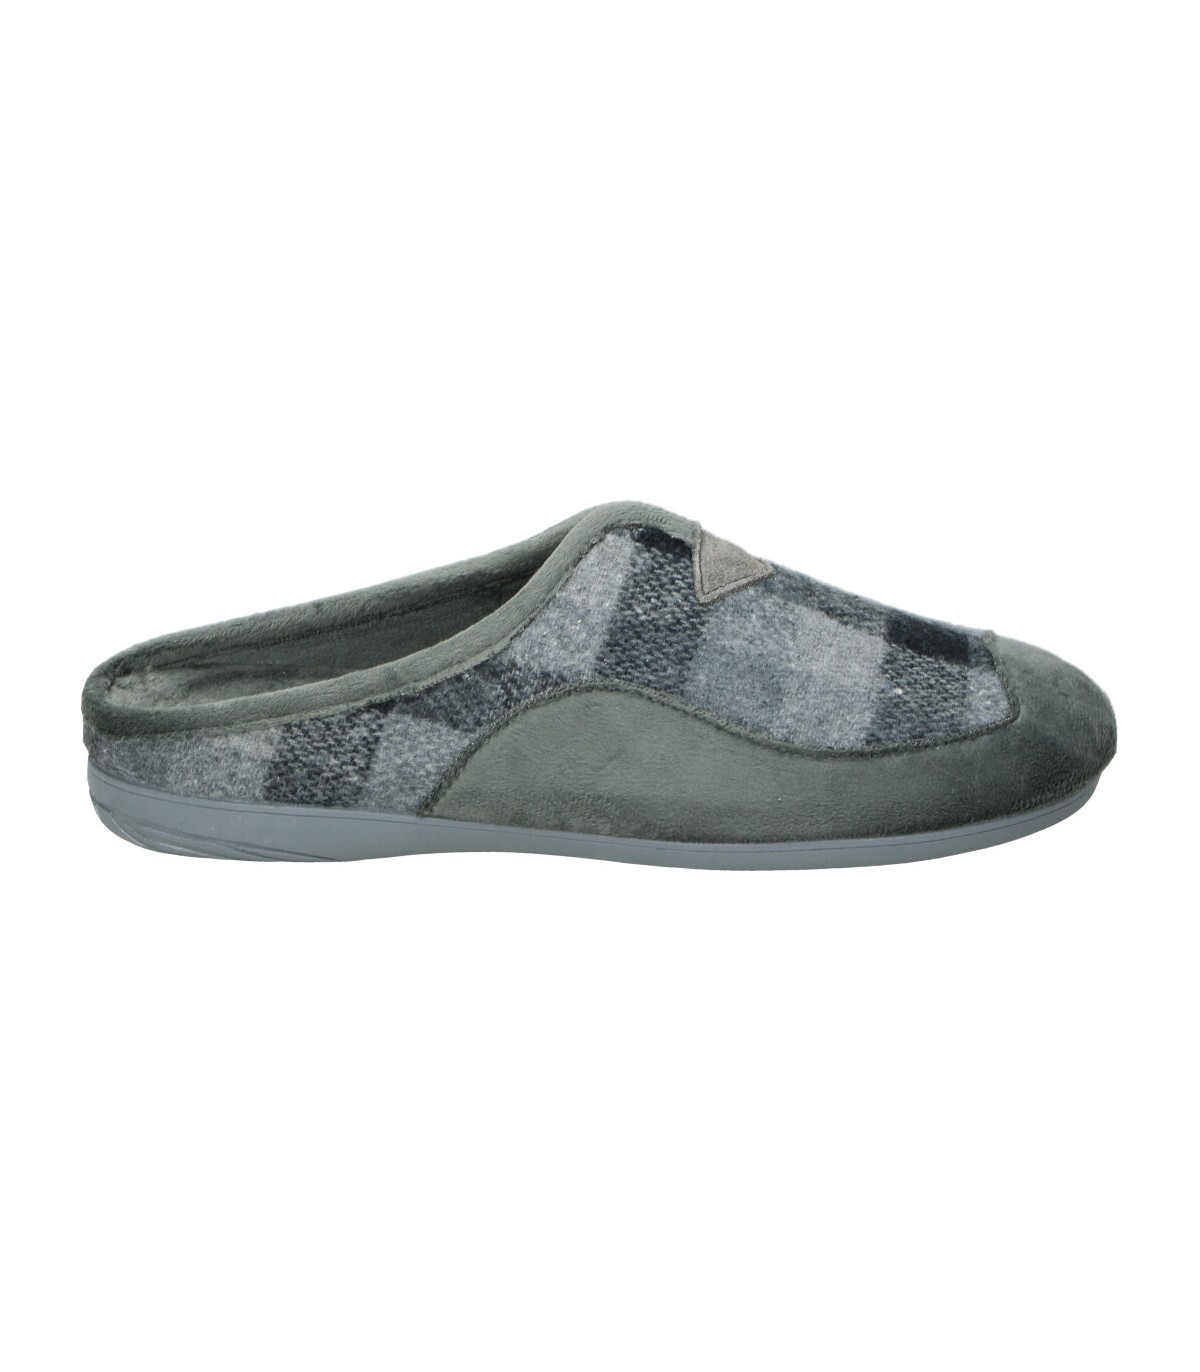 Zapatillas de grises hombre COSDAM 13674 online en MEGACALZADO